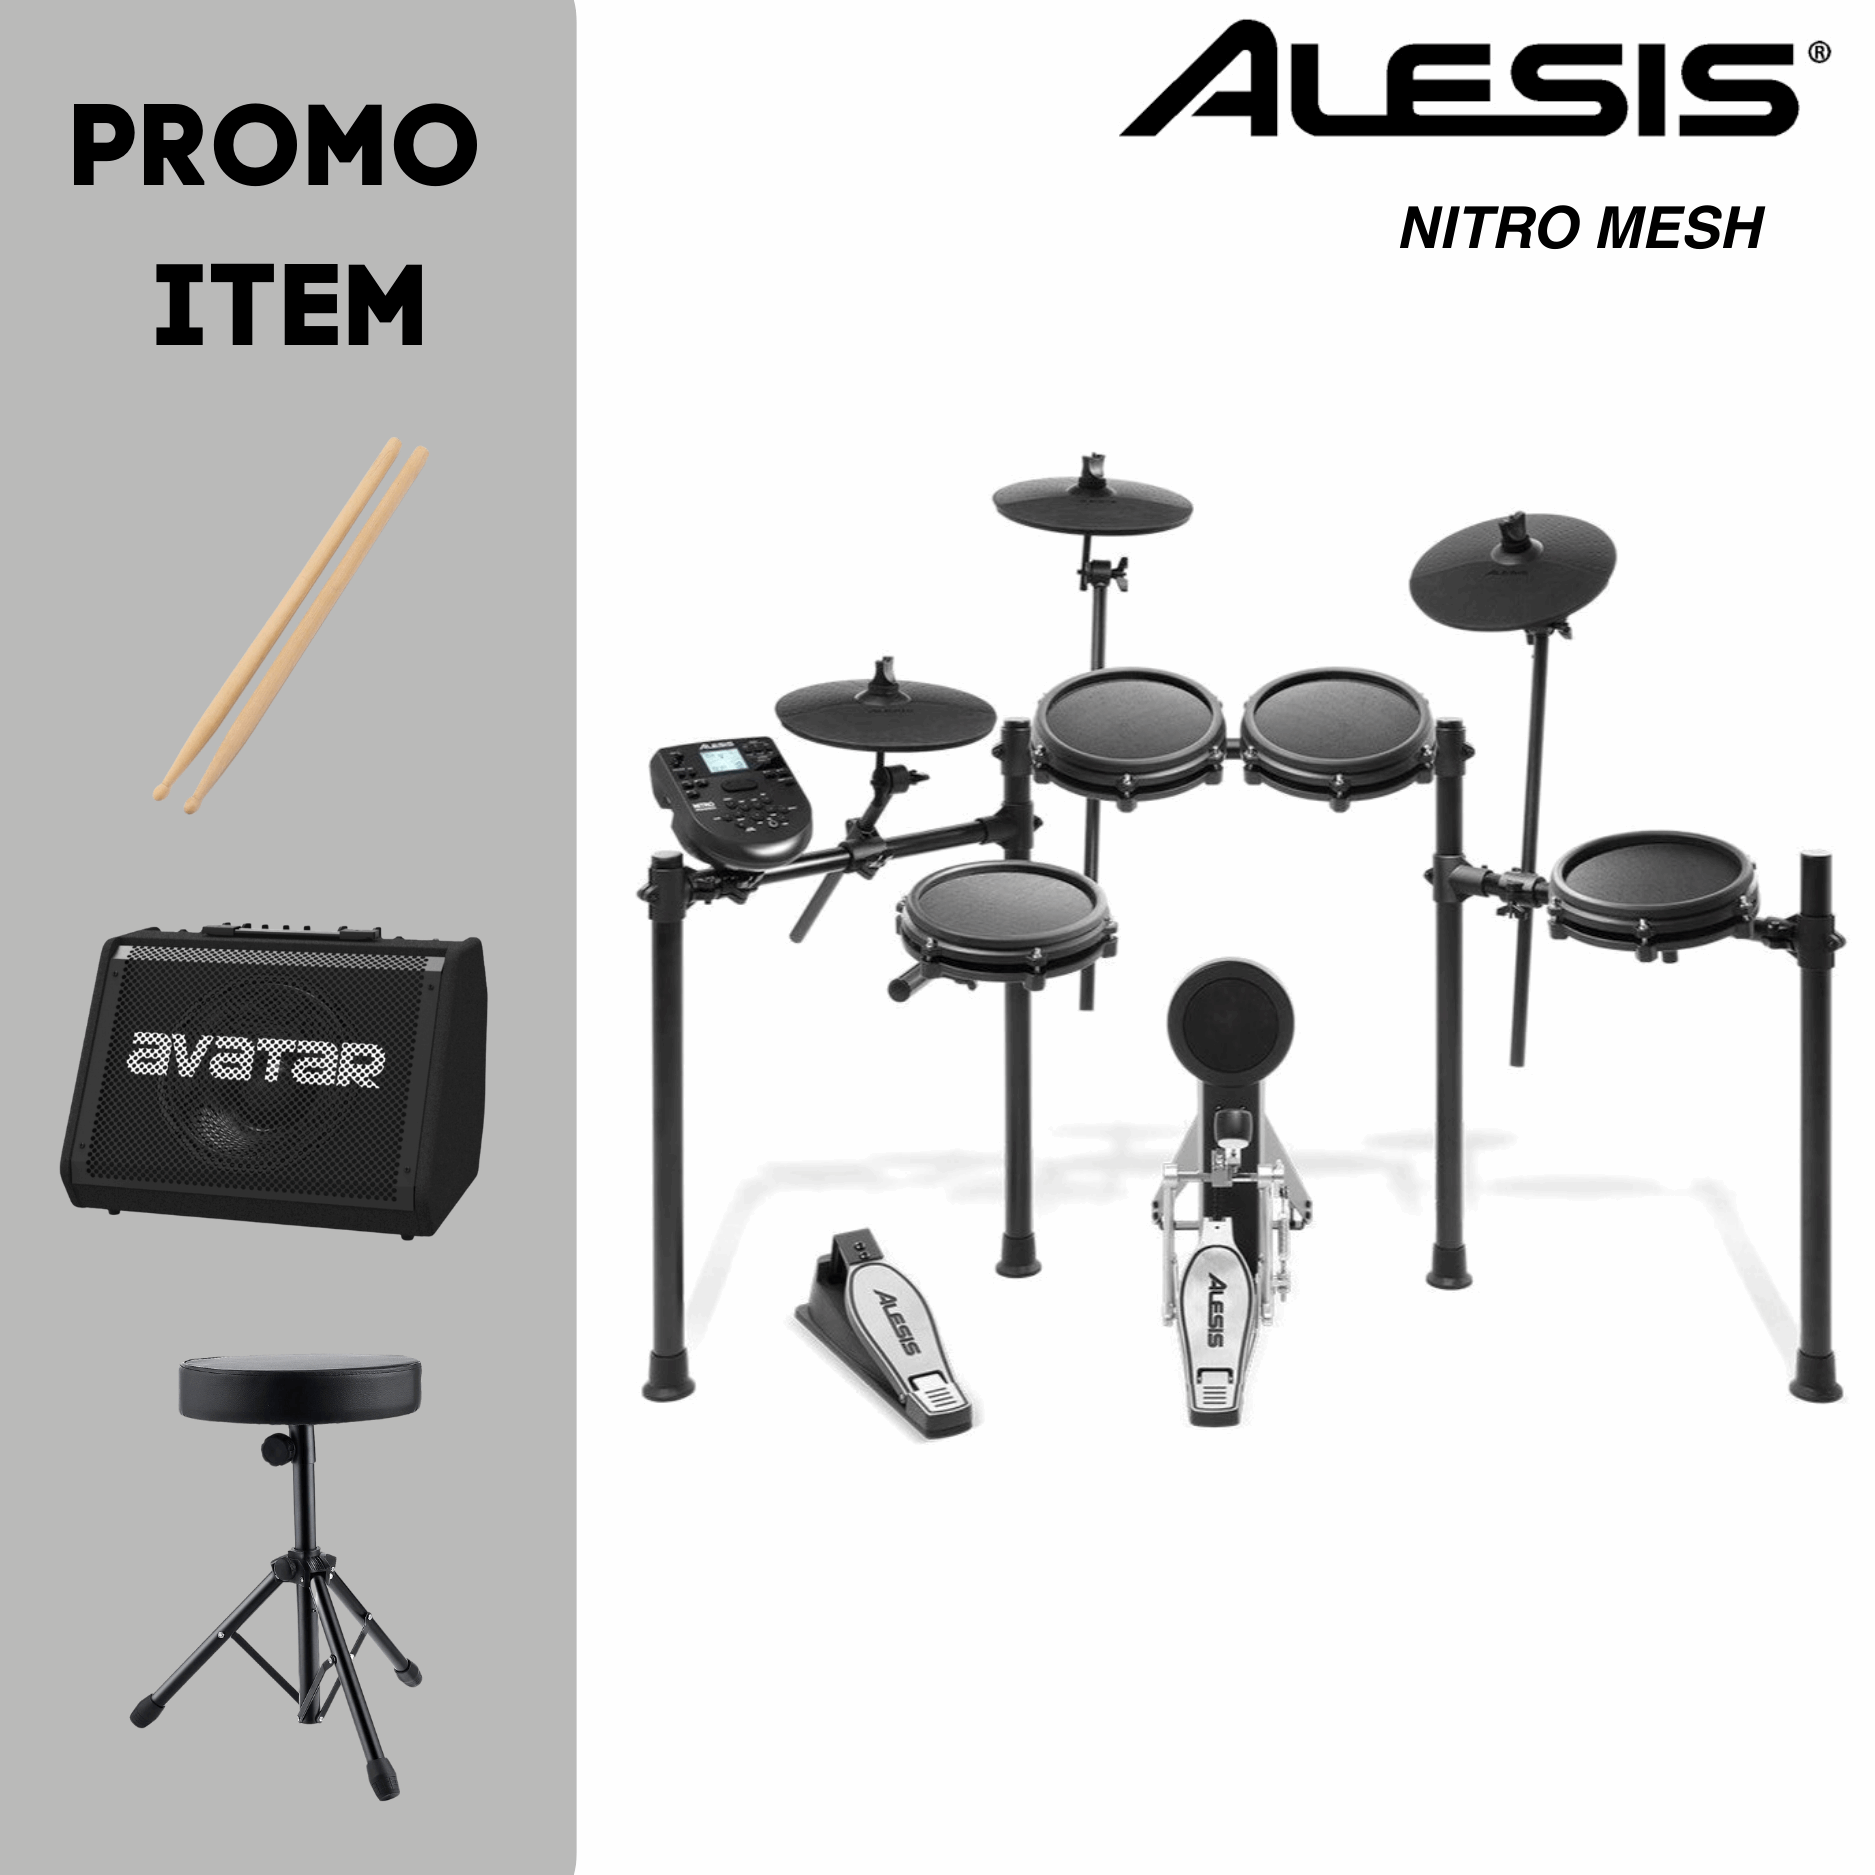 Alesis Nitro Mesh With Promo Items Zoso Music